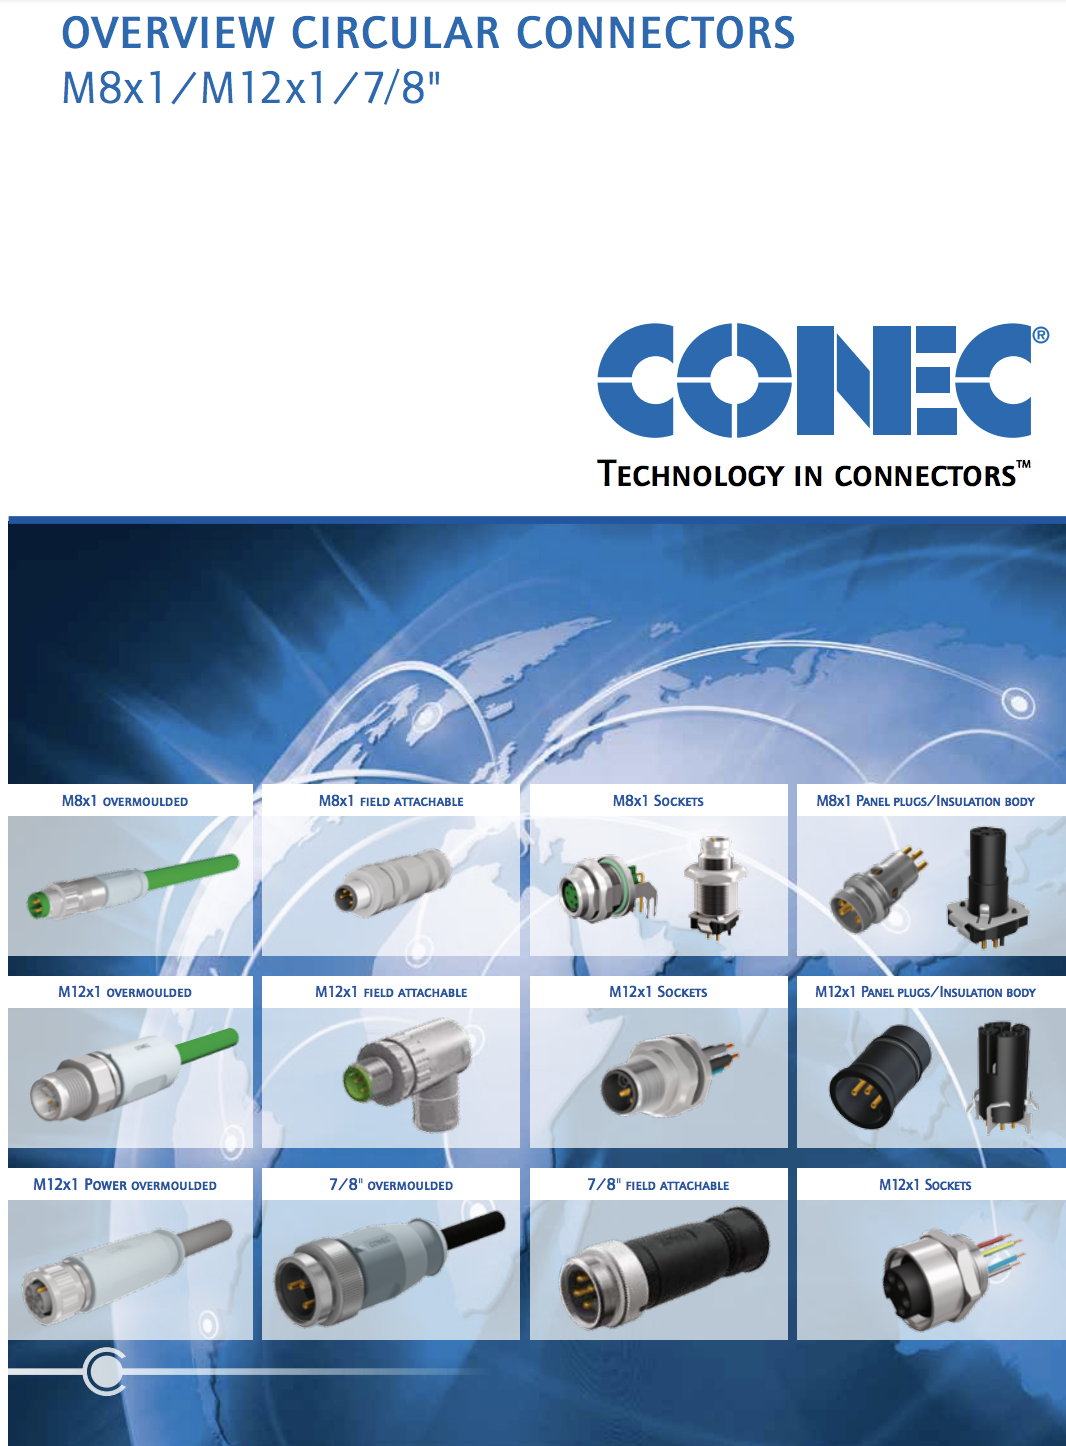 Conec Overview Circular Connectors M8x1 / M12x1 / 7/8"